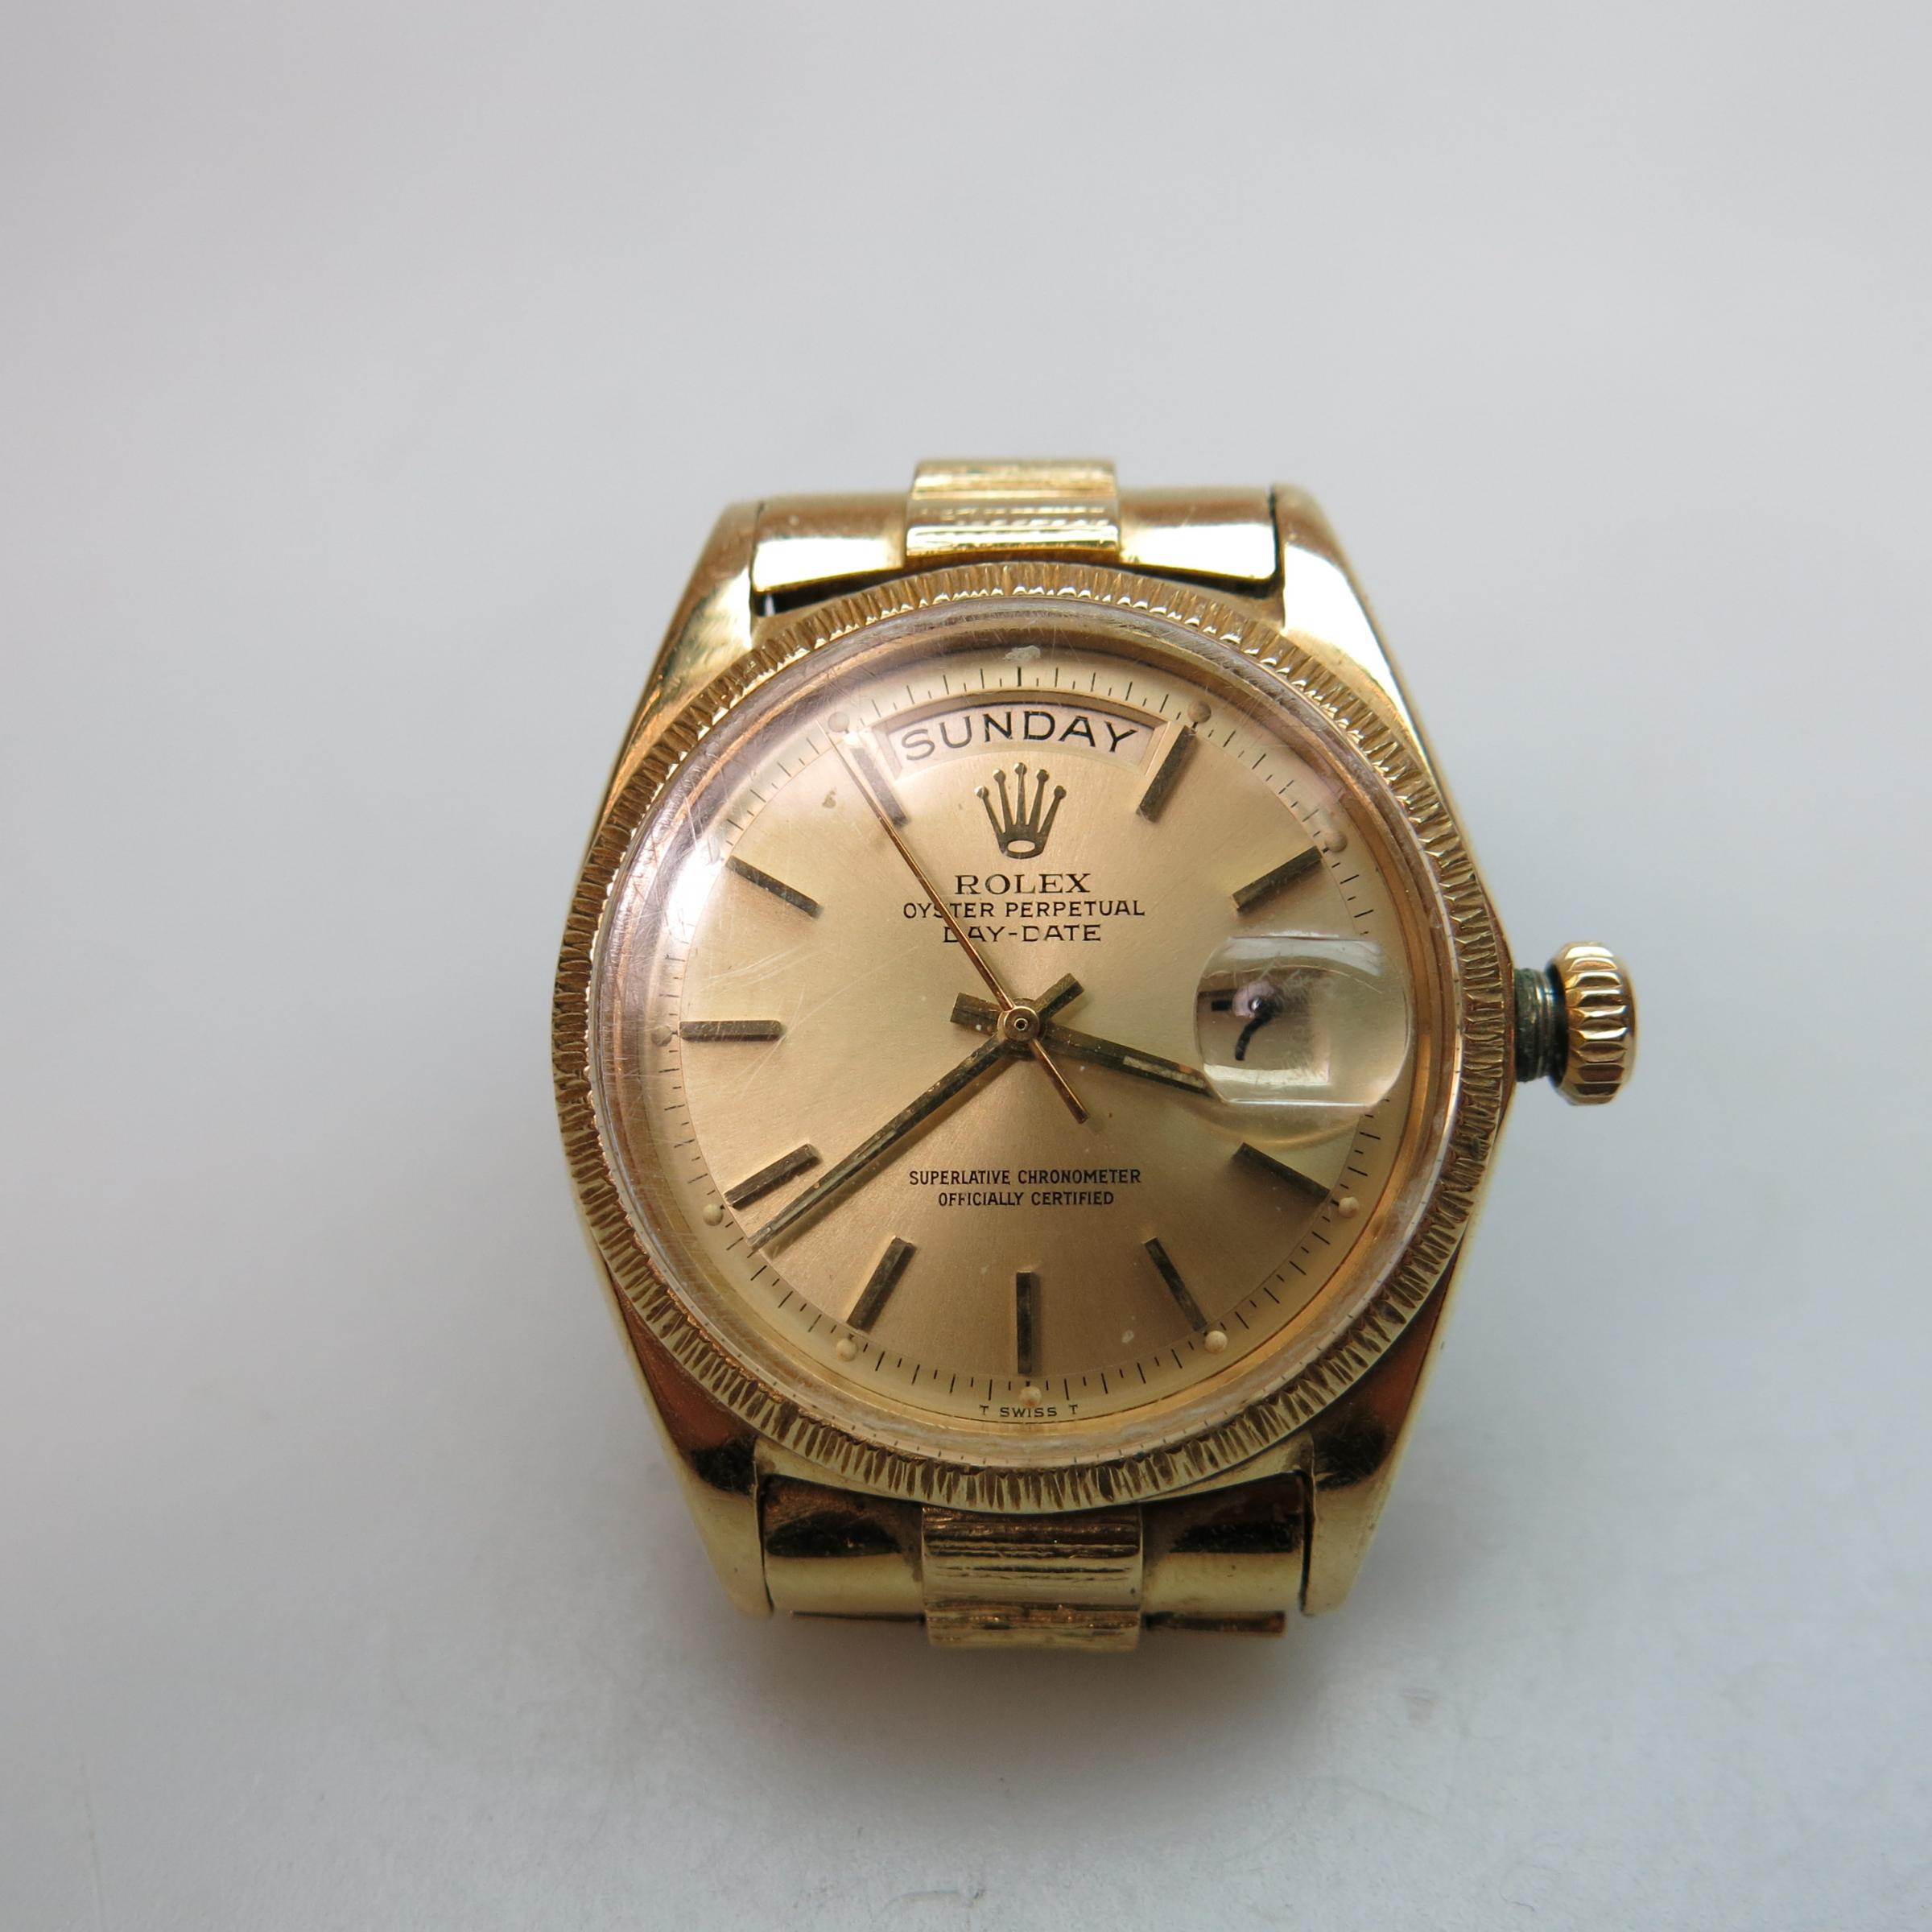 Rolex Oyster Perpetual DayDate Wristwatch